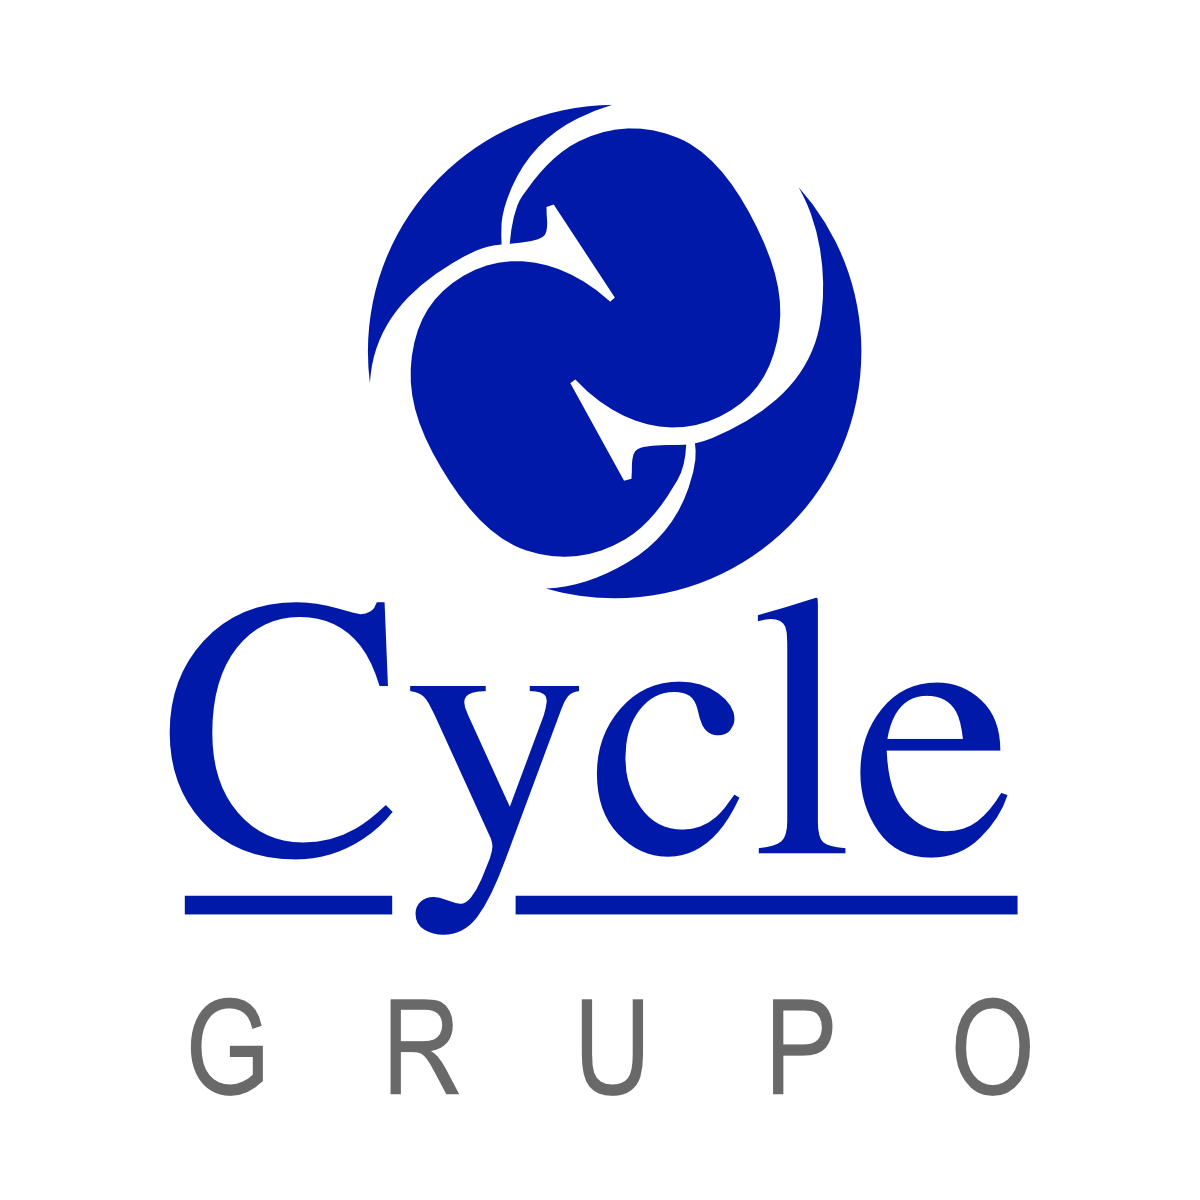 Grupo Cycle